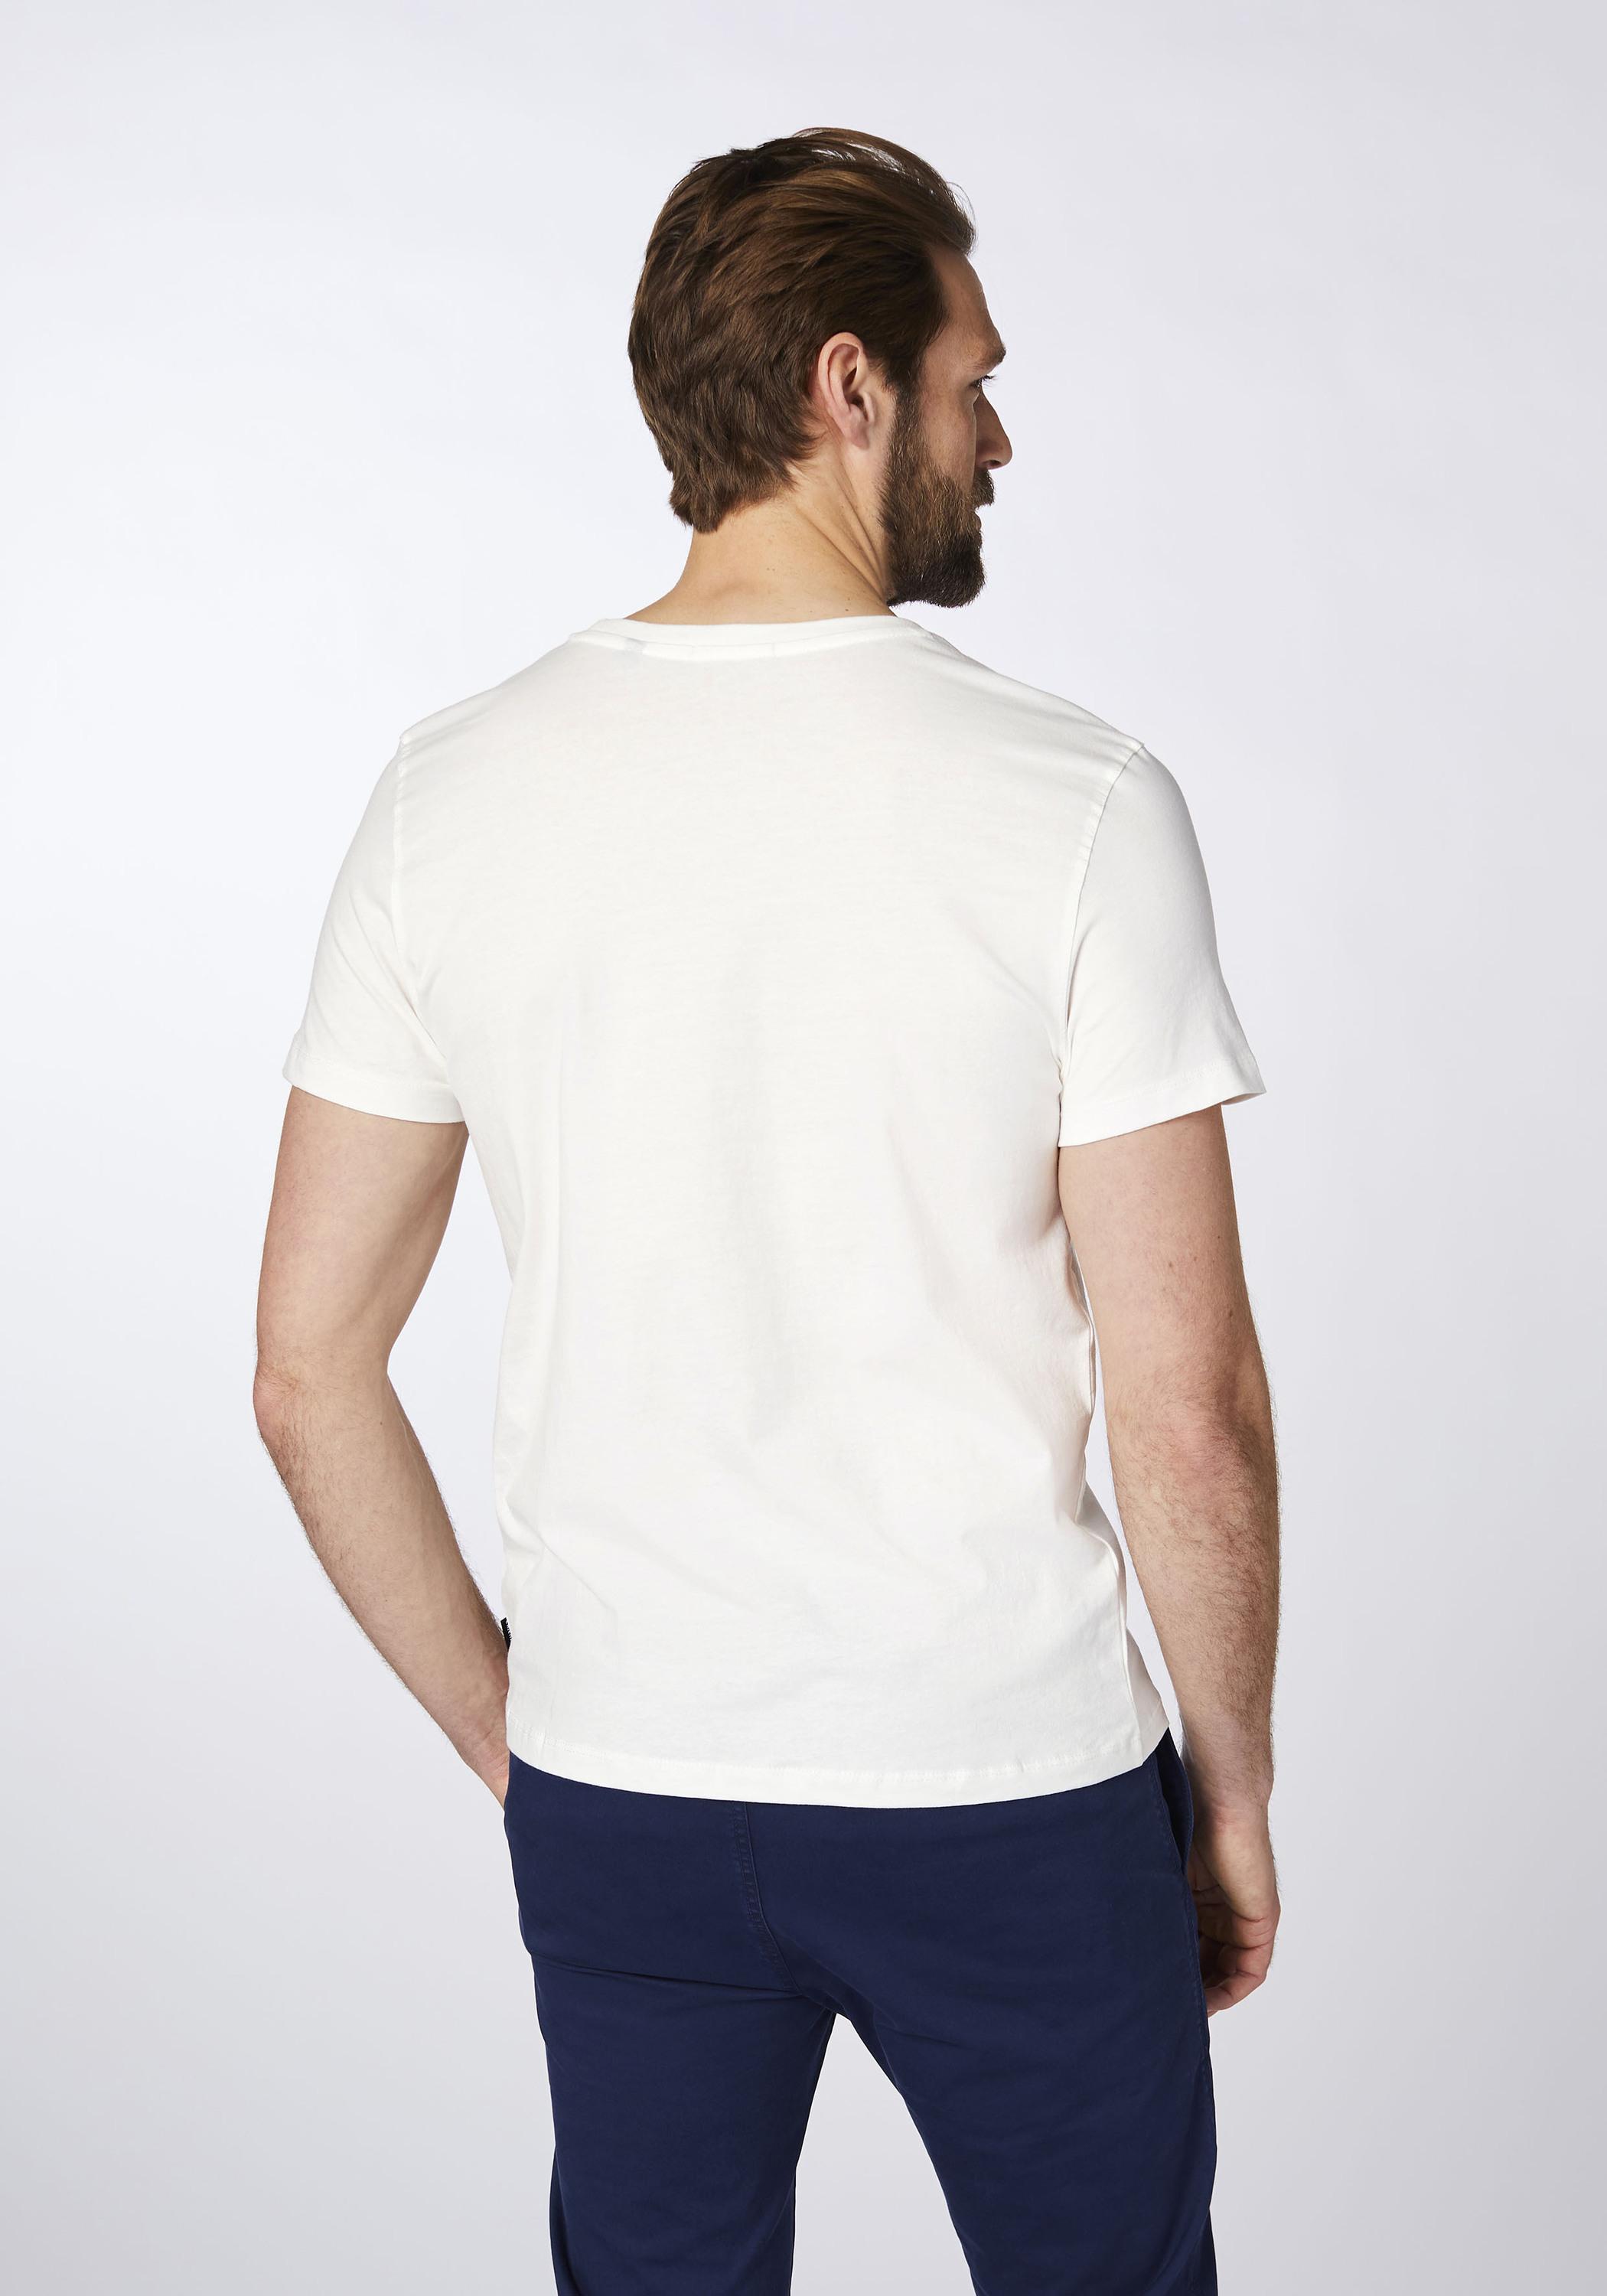 Chiemsee T-Shirt T-Shirt Herren von Online Dif Shop kaufen Grn Wht/Md im SportScheck